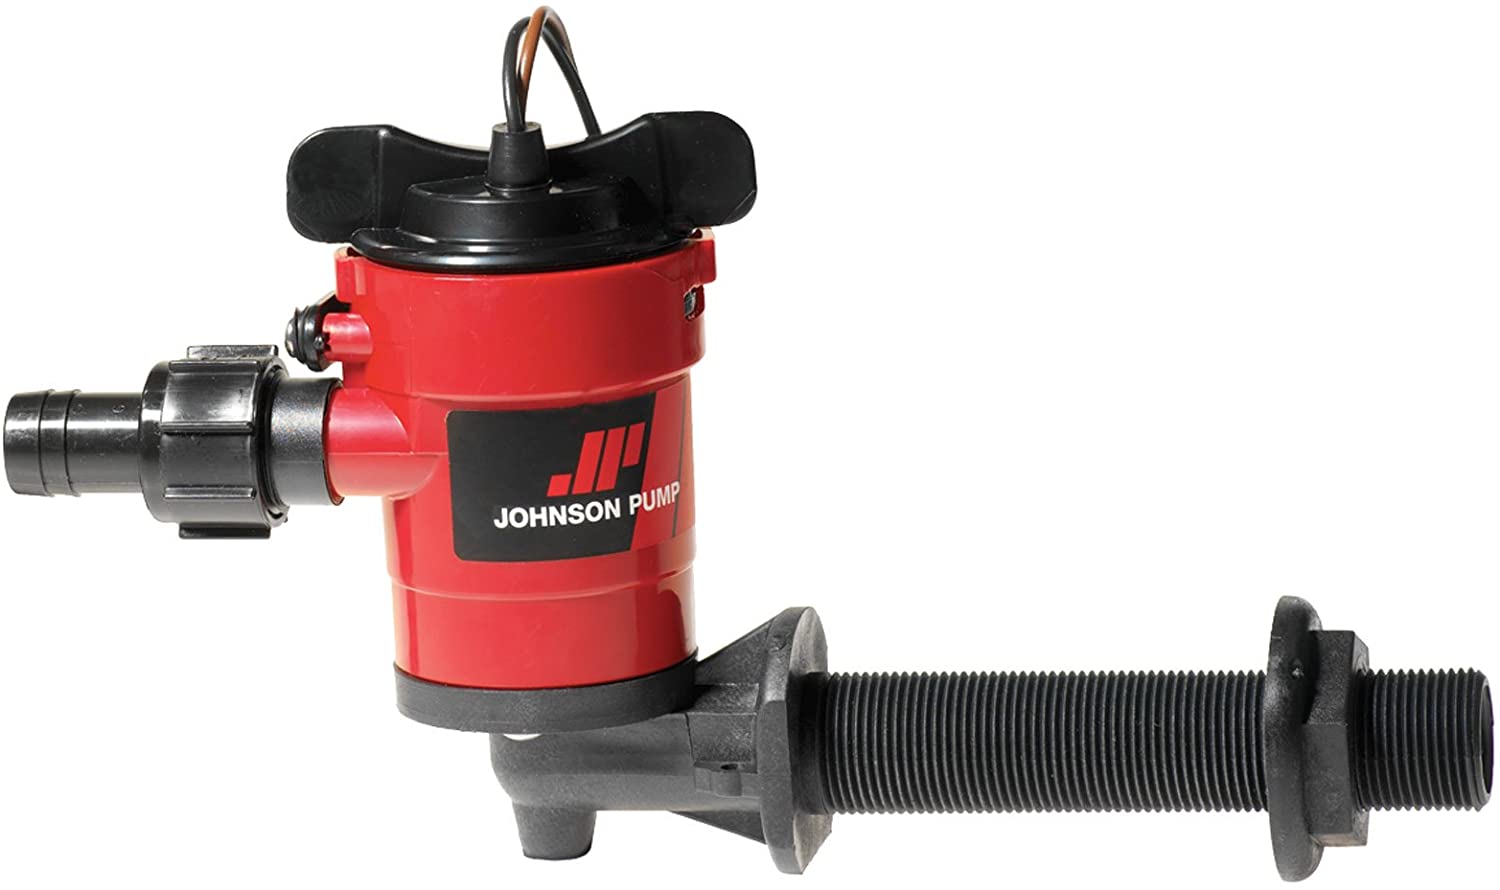 Johnson Pump - Cartridge Aerator 90 Pump, Part No. 38702 - Volts 12 DC - GPH 750